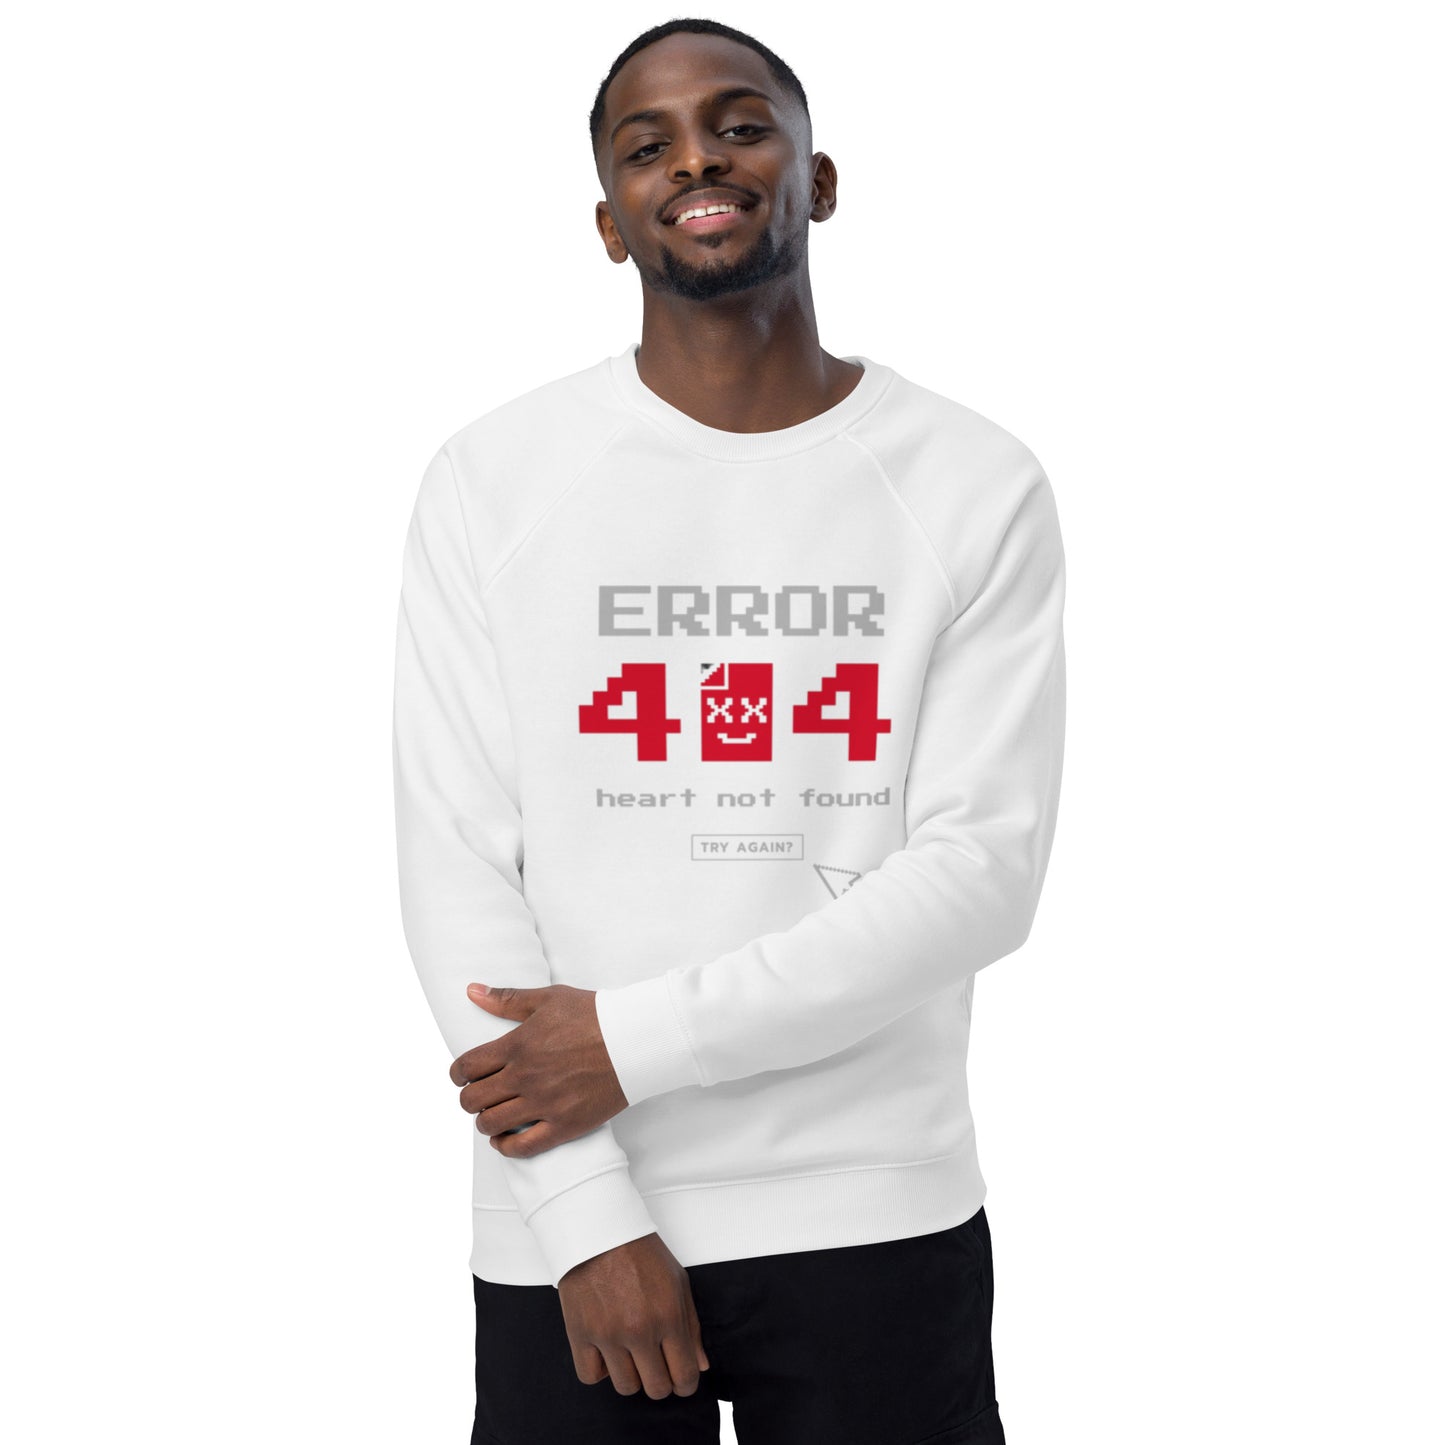 Error 404 sweatshirt